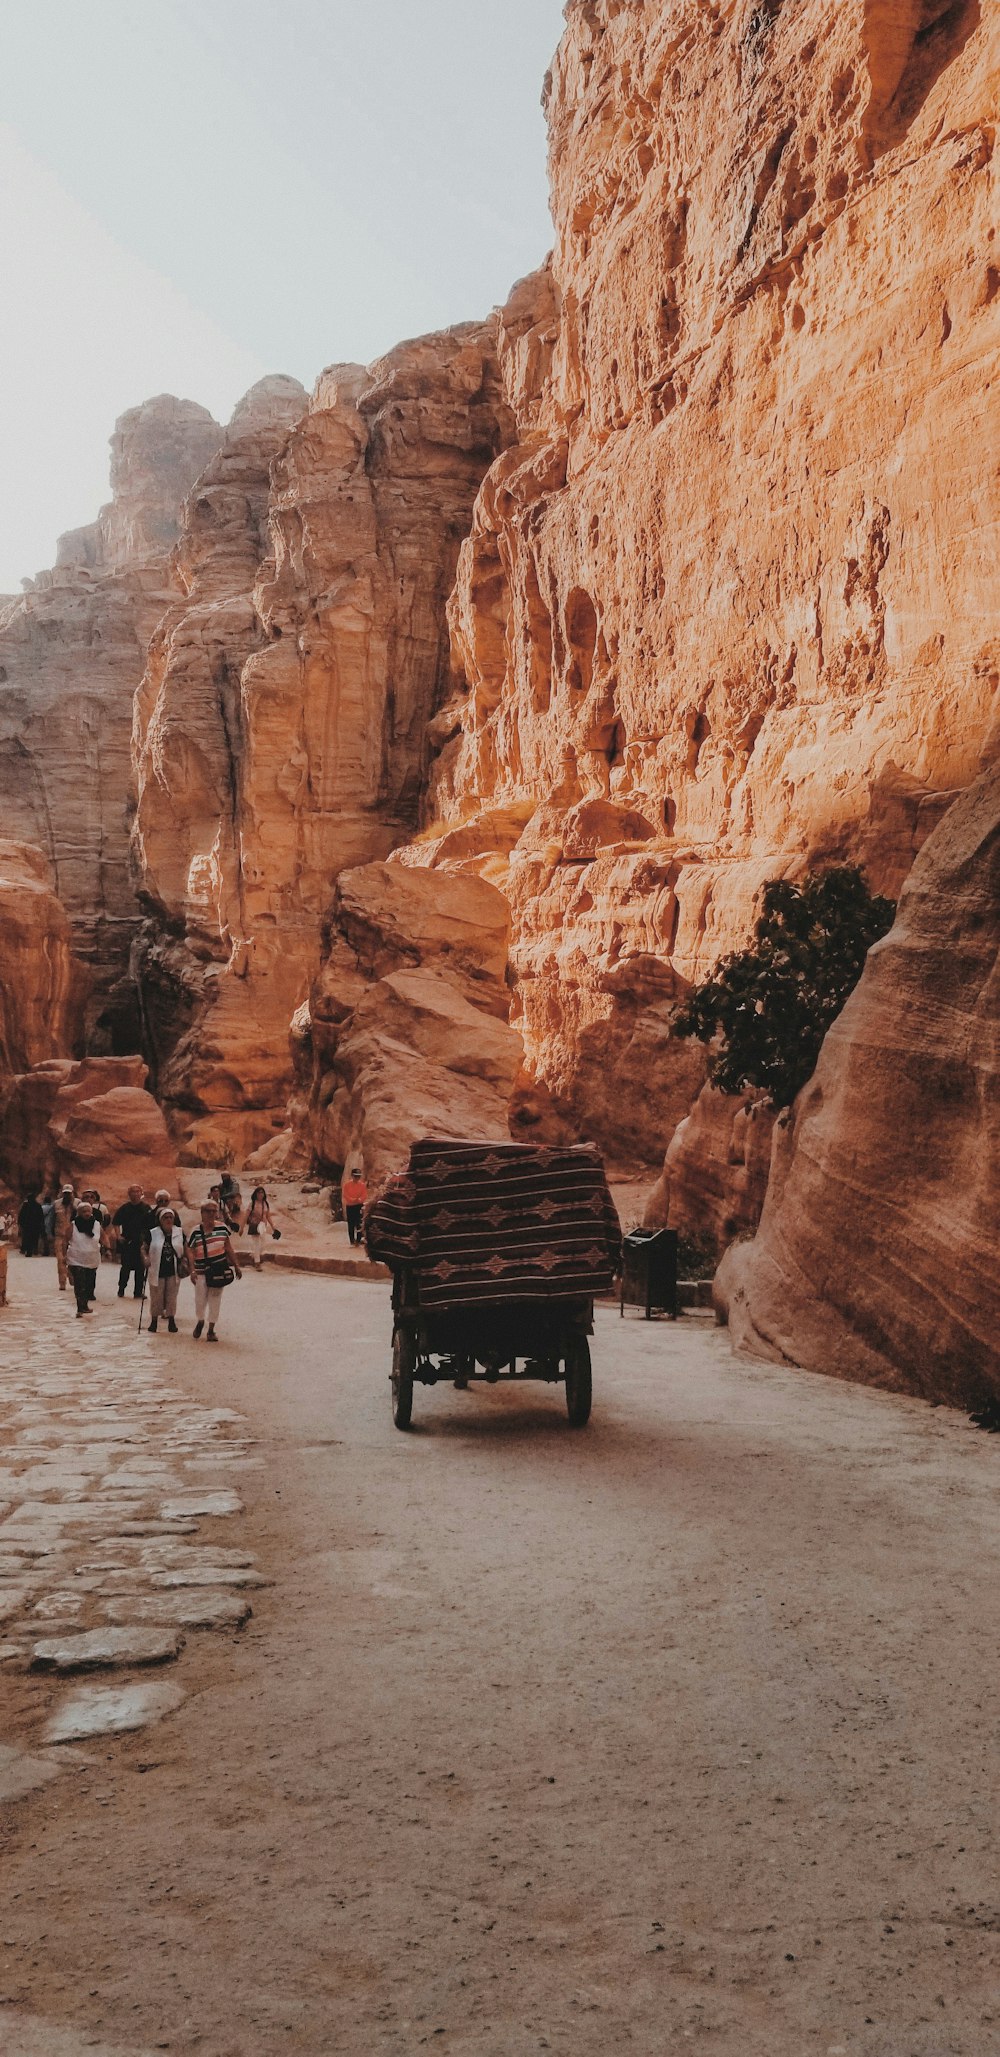 Un camion che percorre una strada sterrata vicino a una montagna